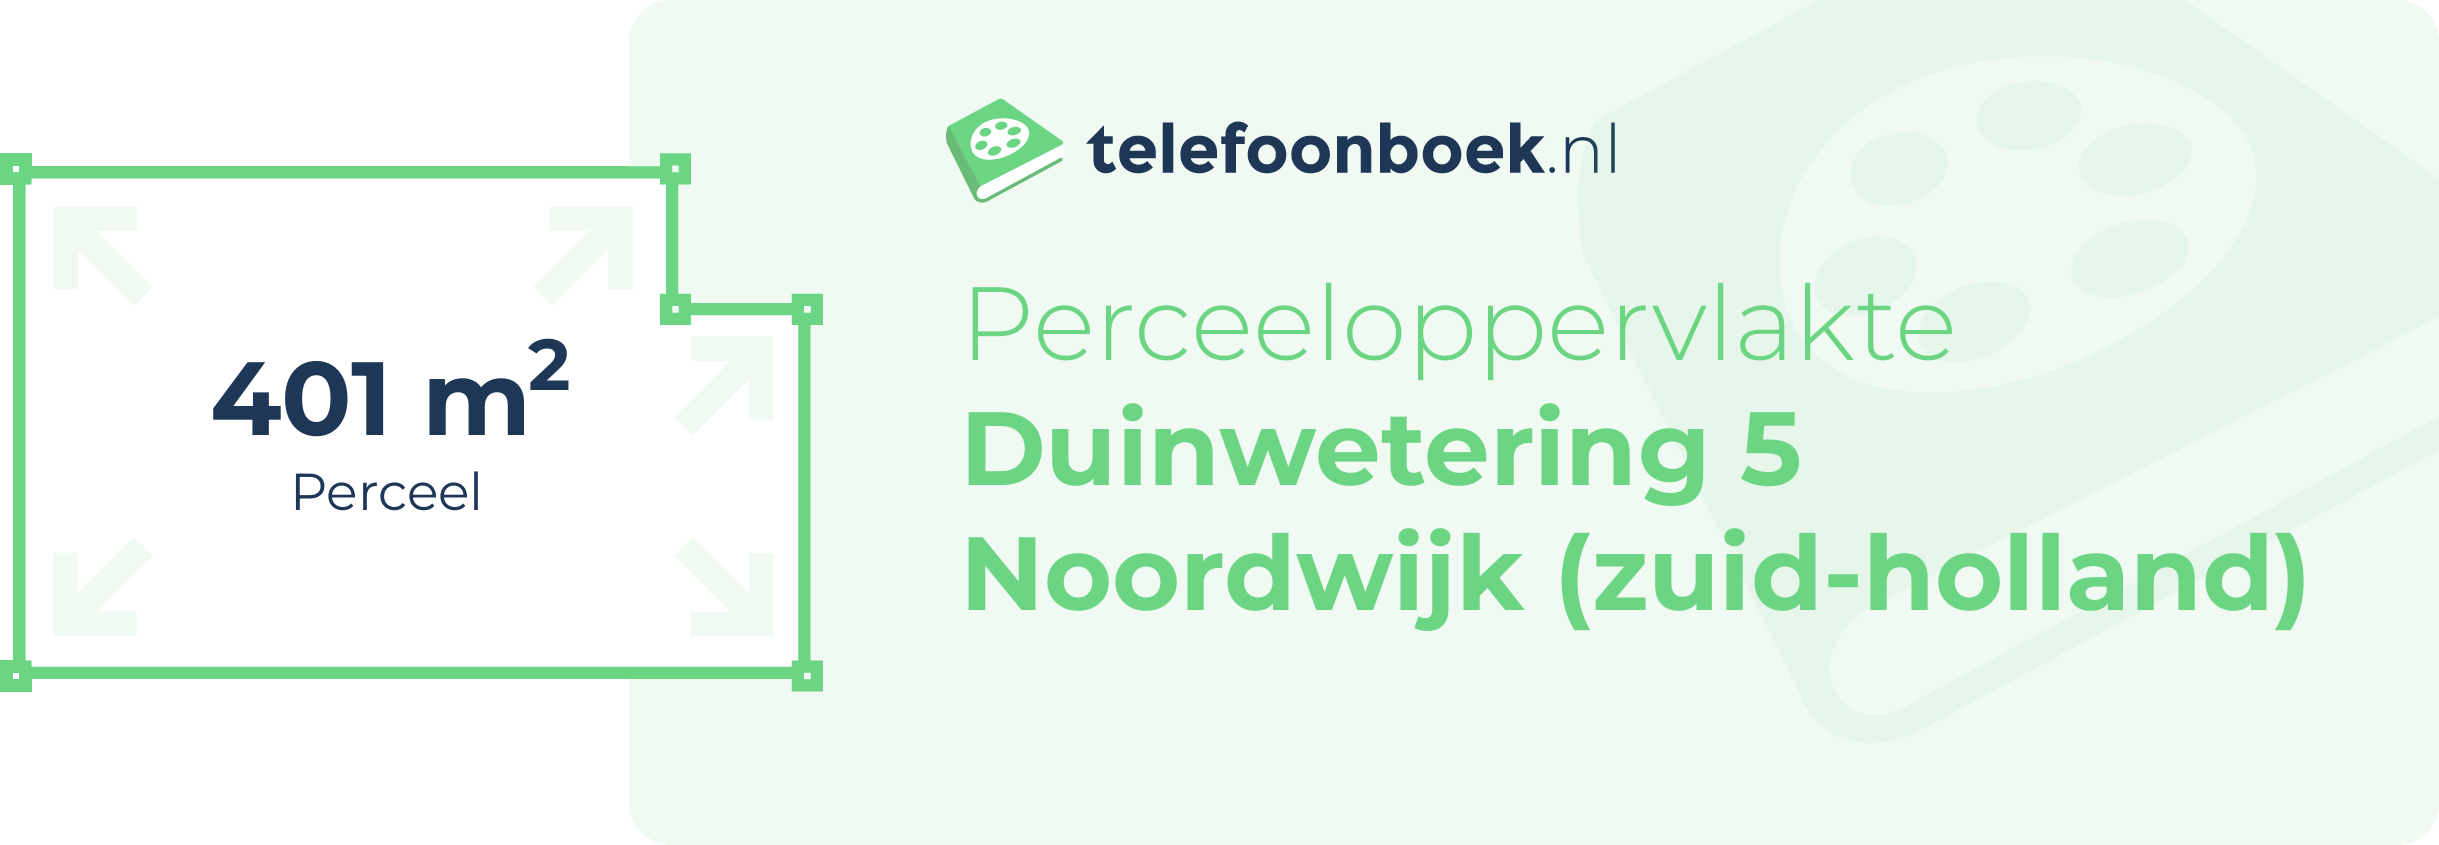 Perceeloppervlakte Duinwetering 5 Noordwijk (Zuid-Holland)